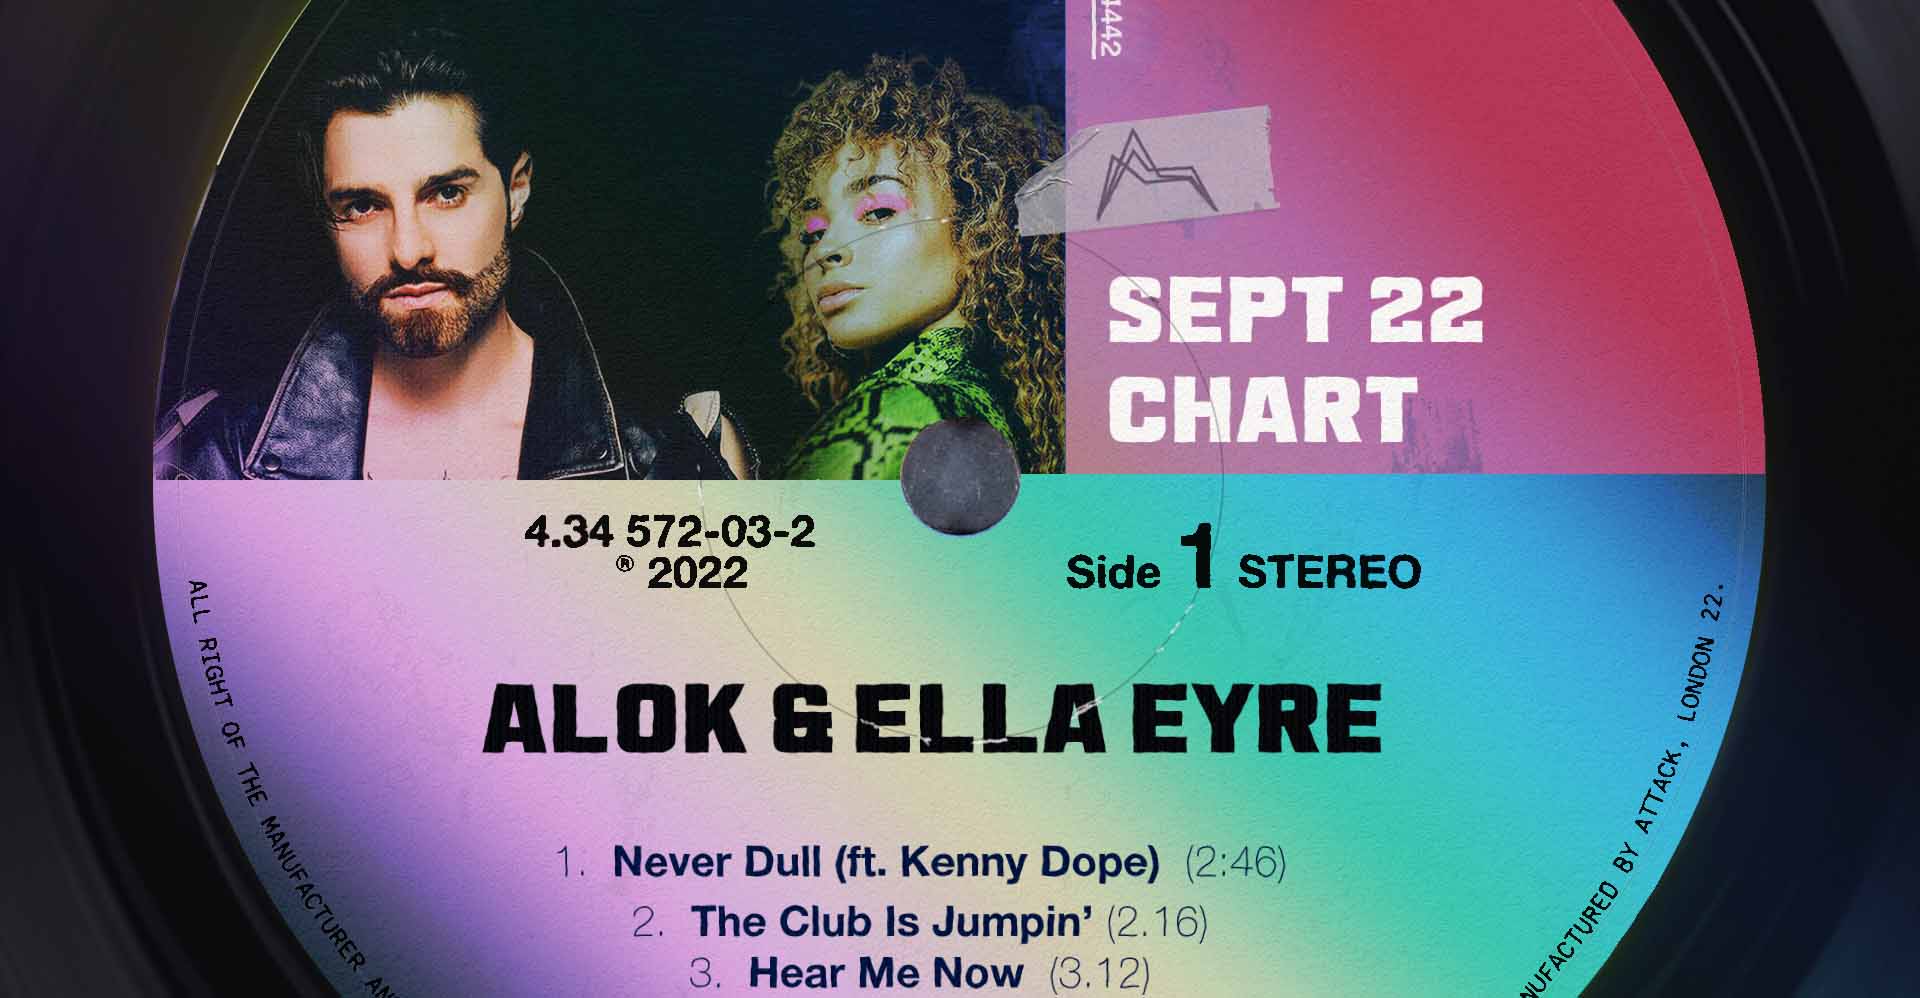 Alok & Ella Eyre Sept 22 Chart